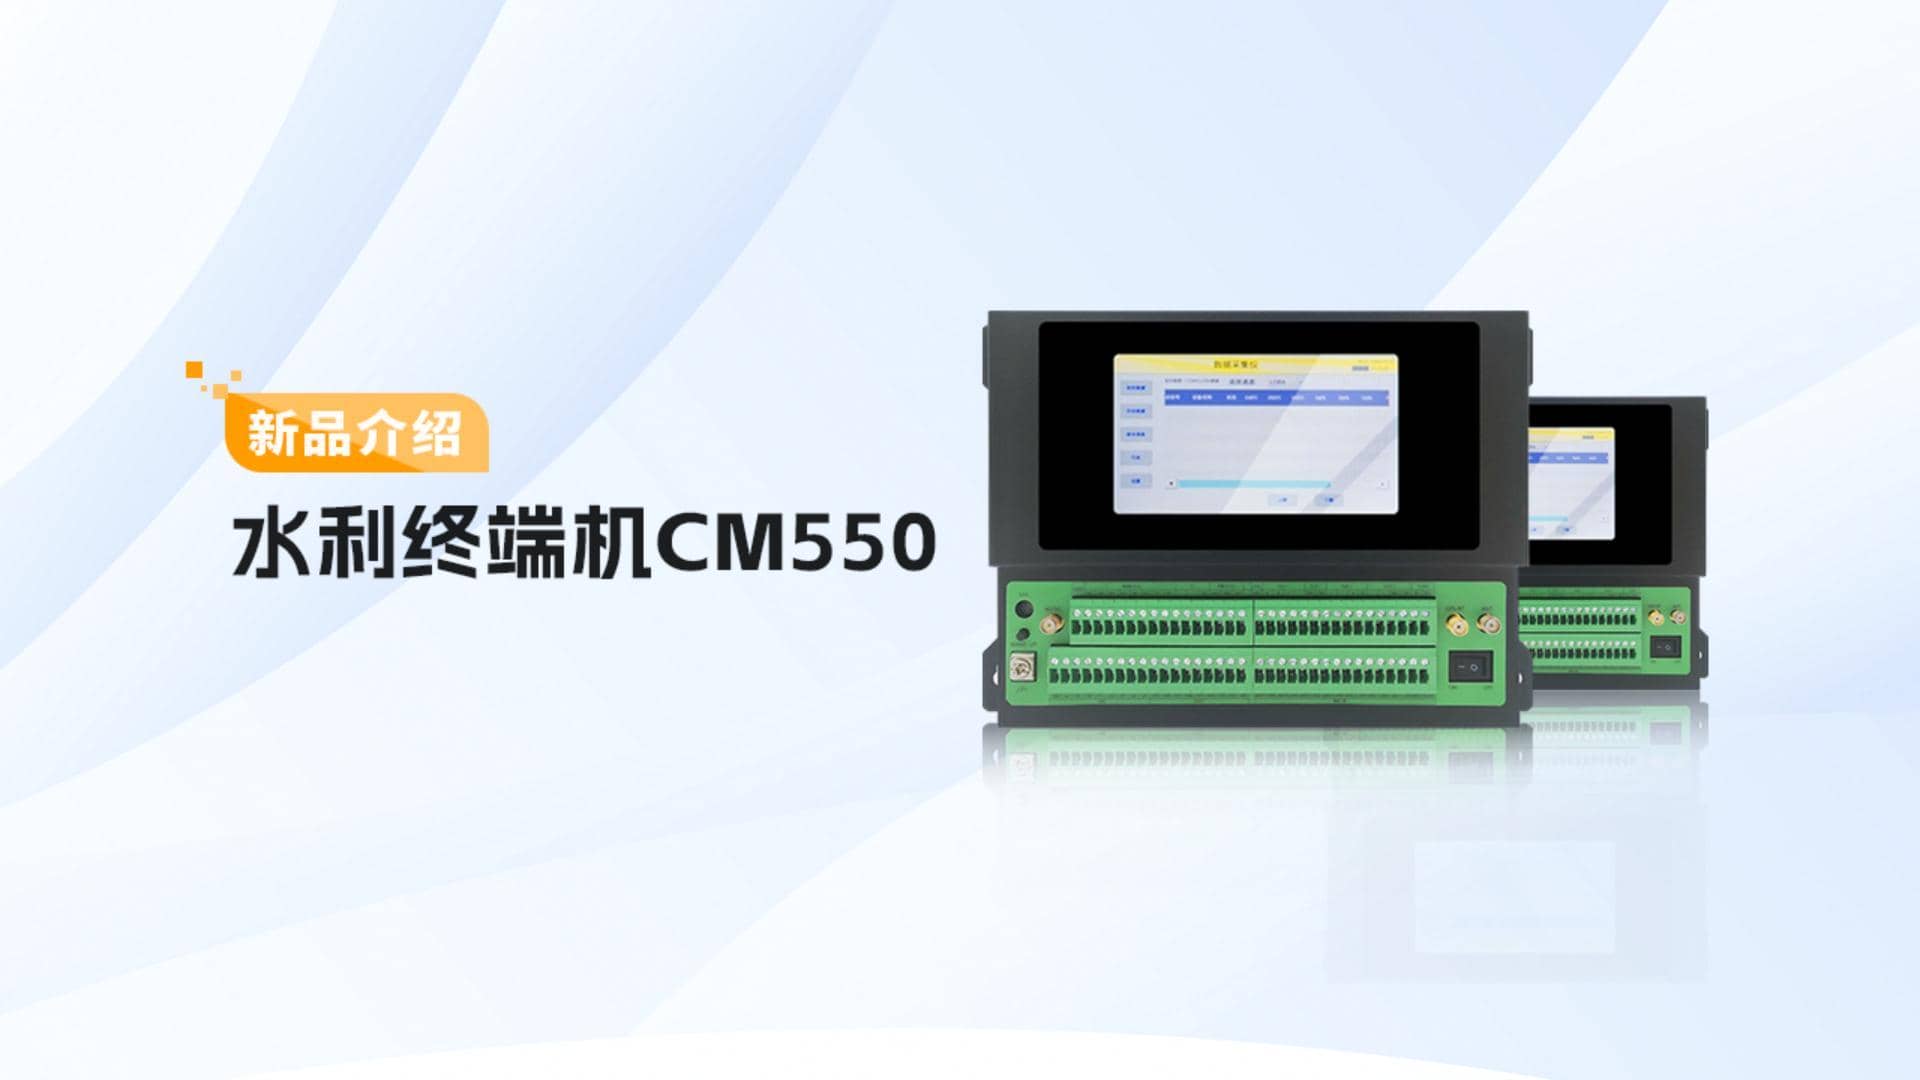 CM550水利终端机 产品介绍